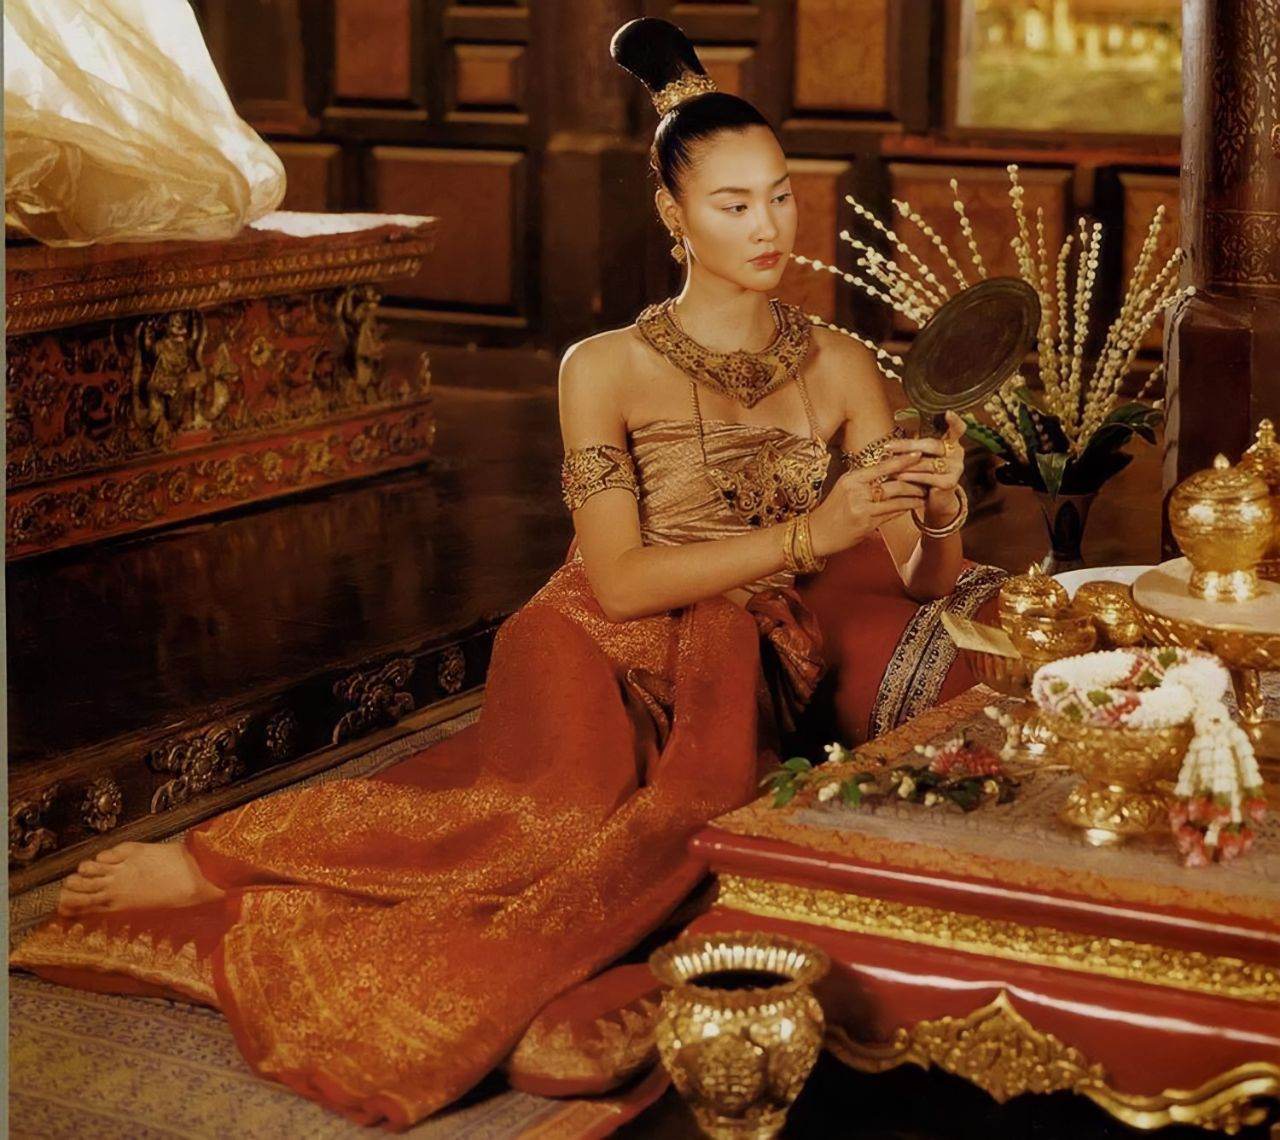 สุริโยไท: The Legend of Suriyothai (2001) | THAILAND 🇹🇭